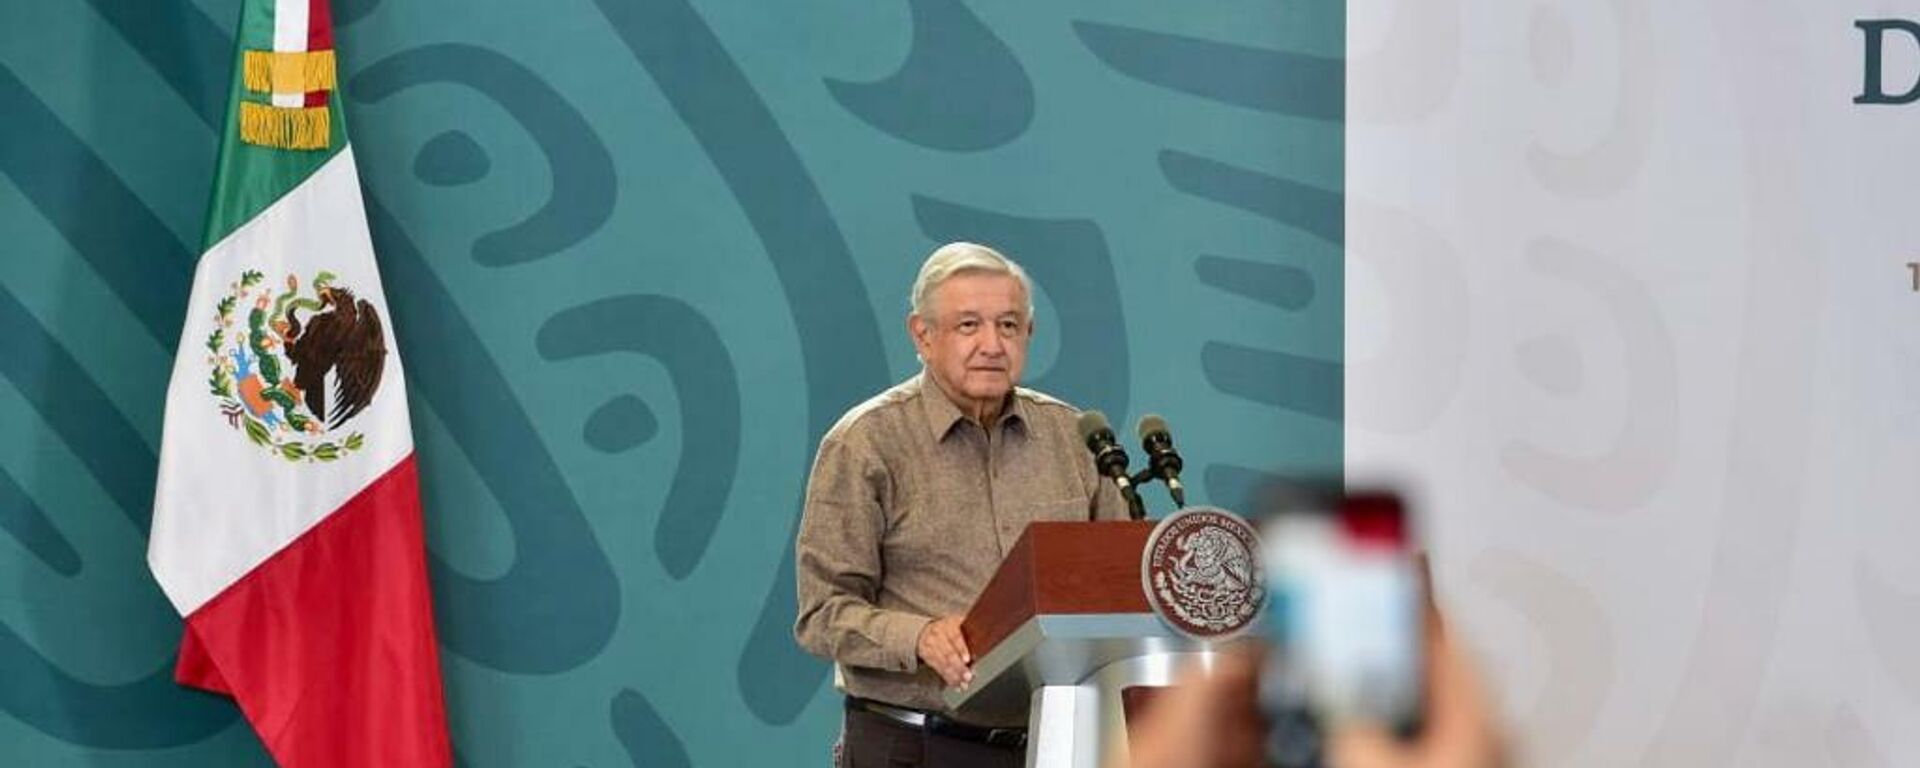 Andrés Manuel López Obrador, presidente de México - Sputnik Mundo, 1920, 12.11.2021